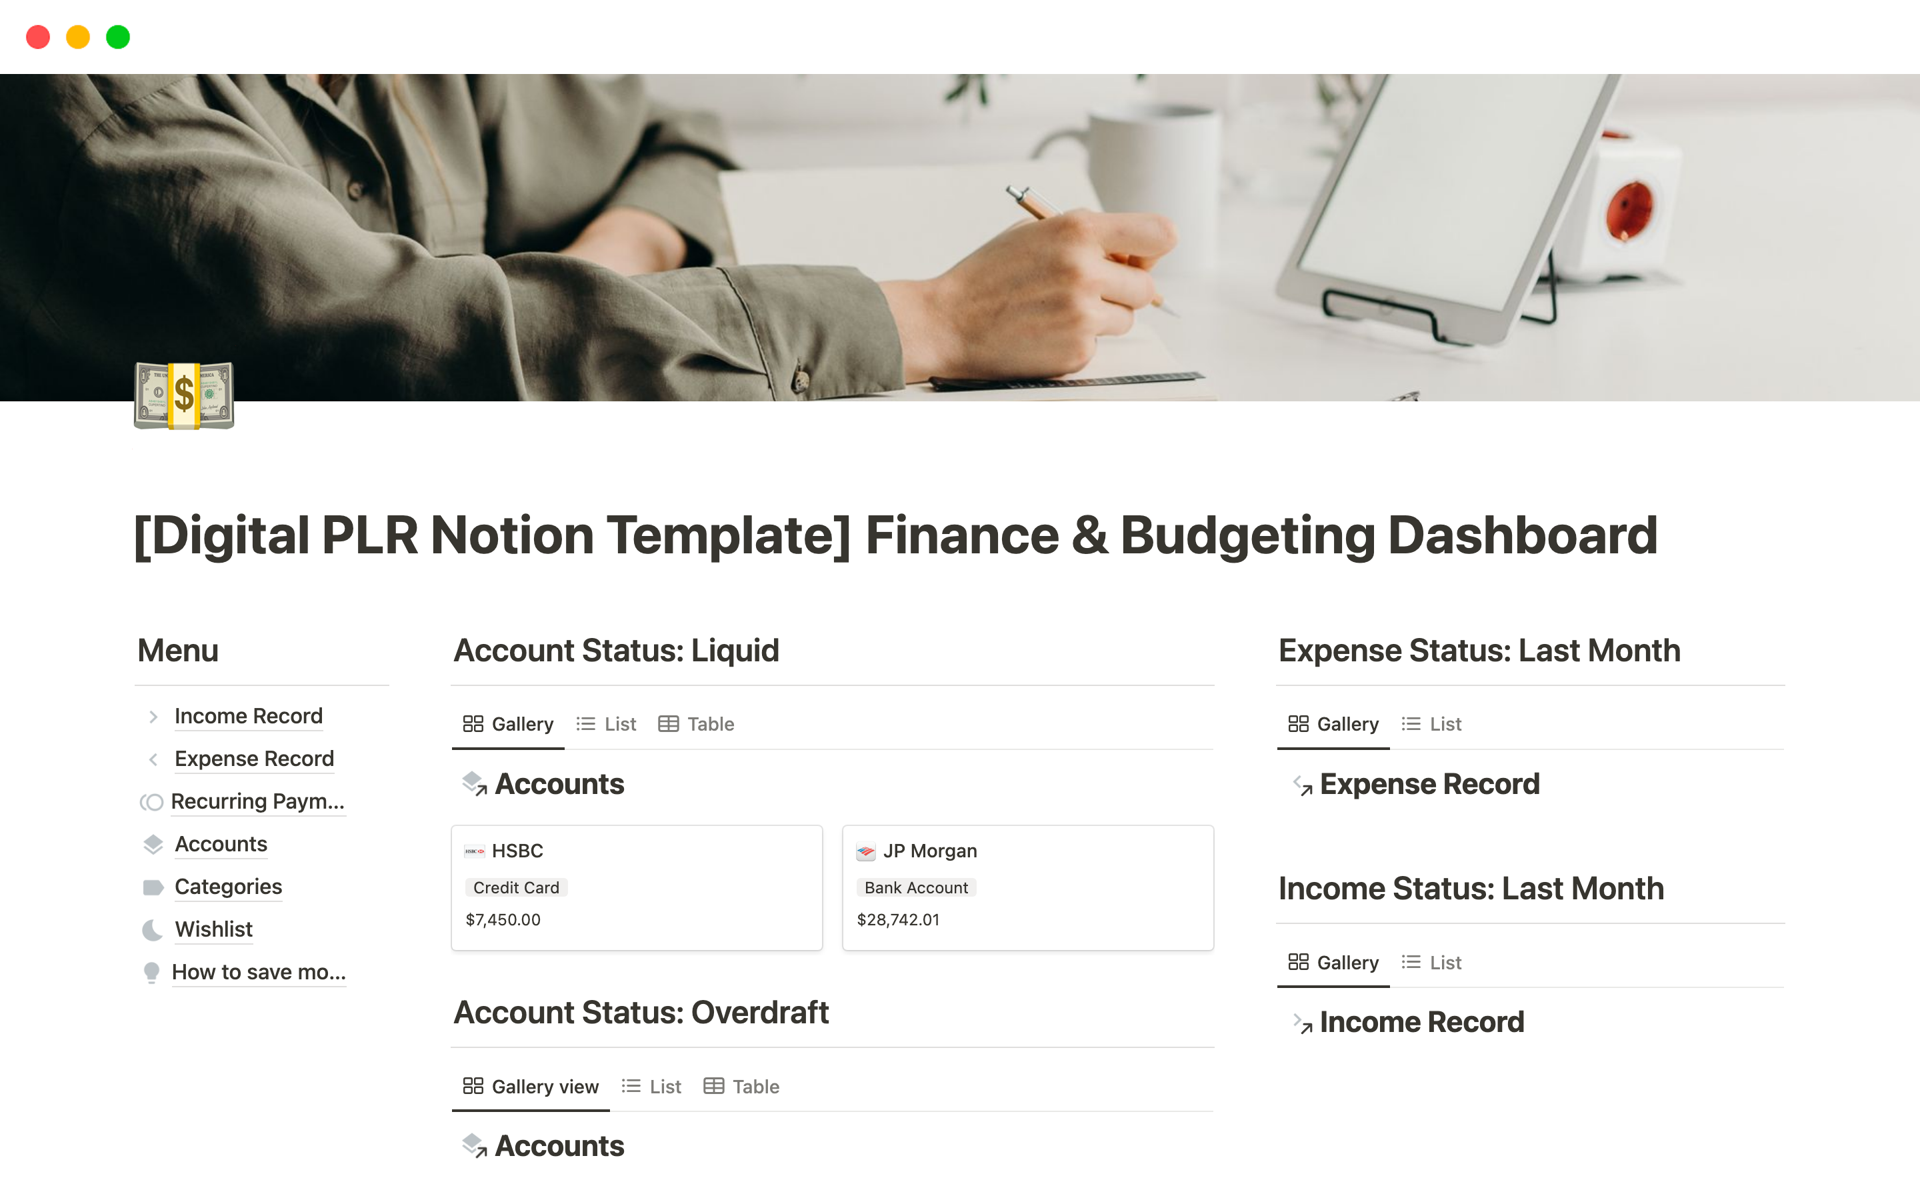 Uma prévia do modelo para Finance & Budgeting Dashboard